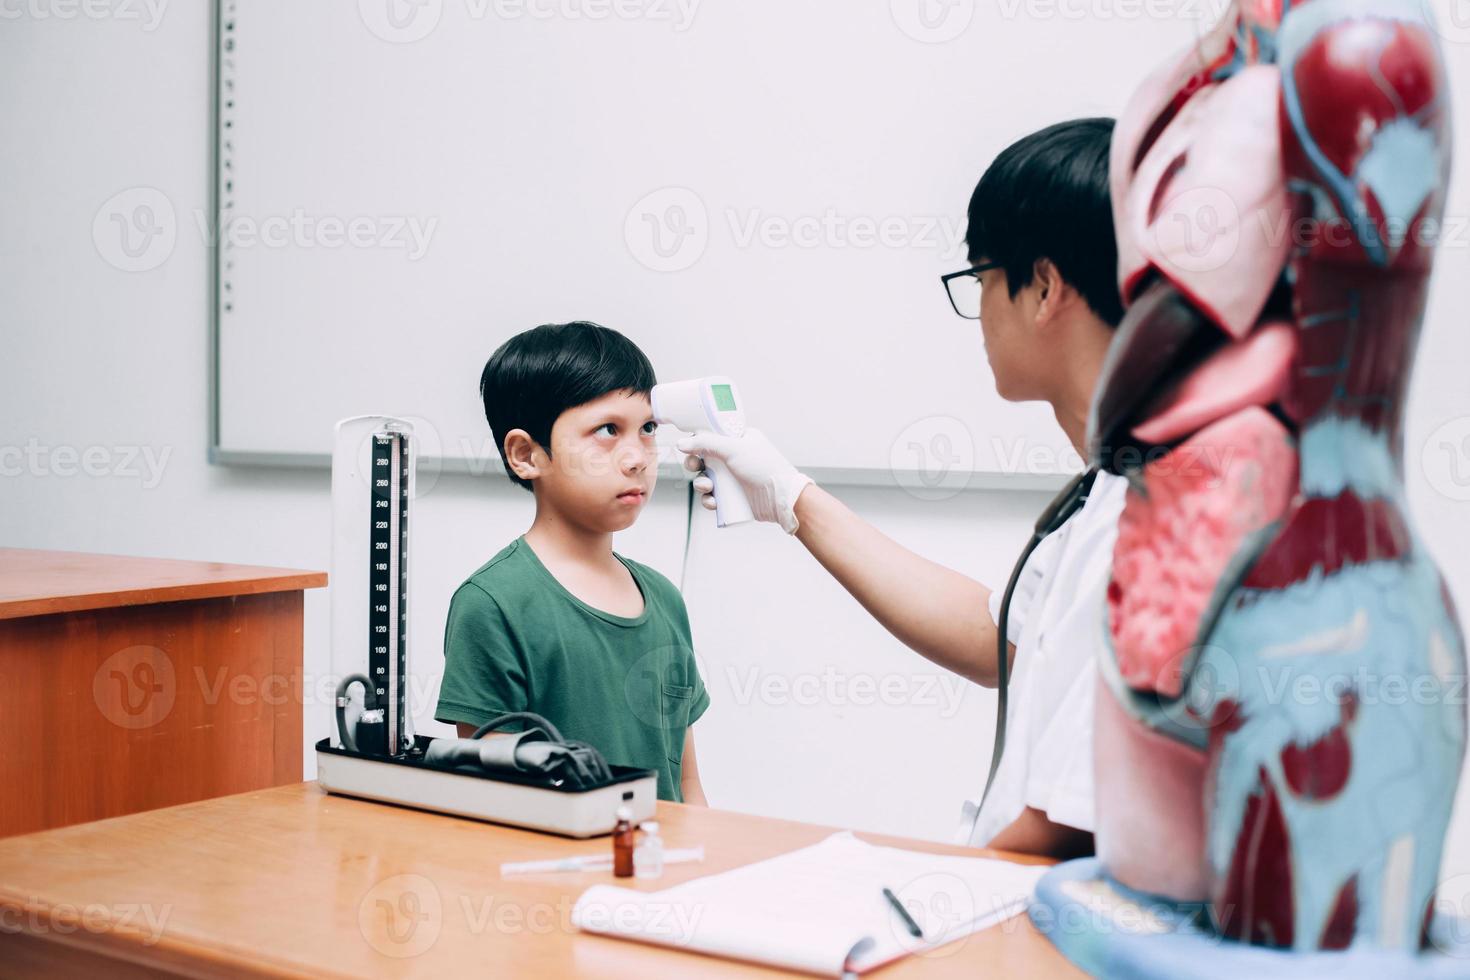 medico controlla la temperatura corporea del paziente del ragazzo utilizzando la pistola termometro a infrarossi sulla fronte foto